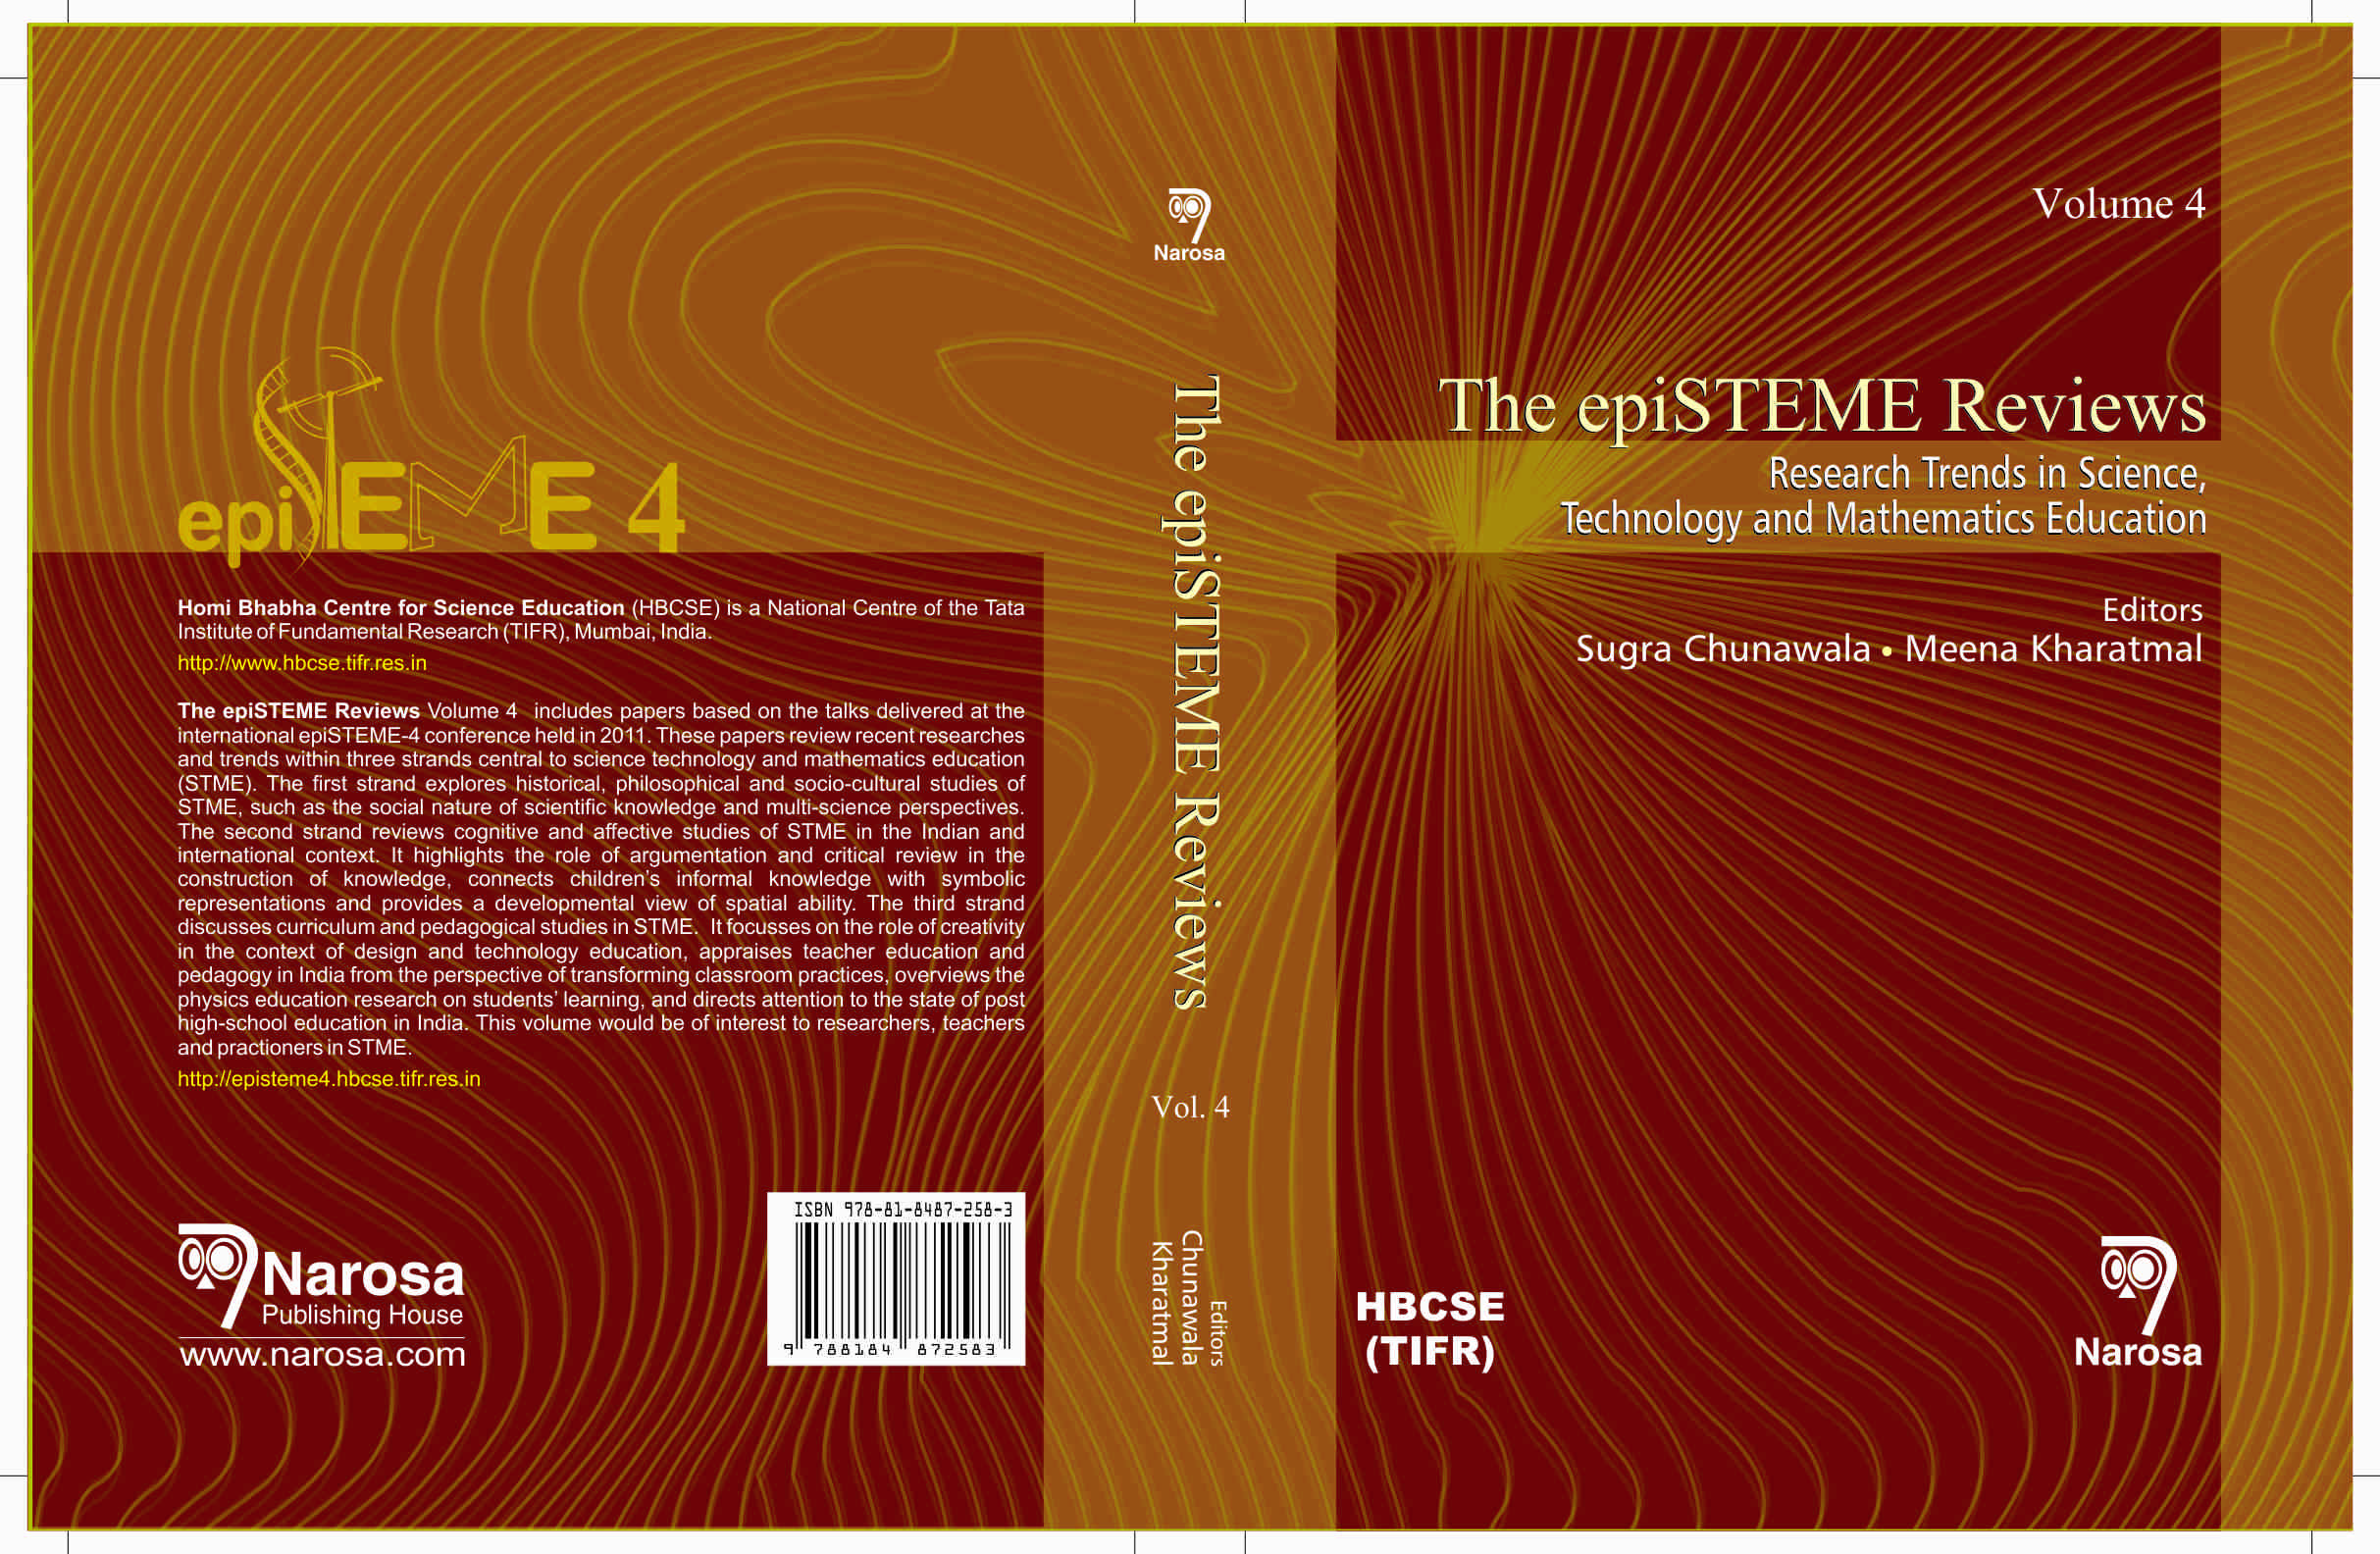 epiSTEME 4 Review Volume